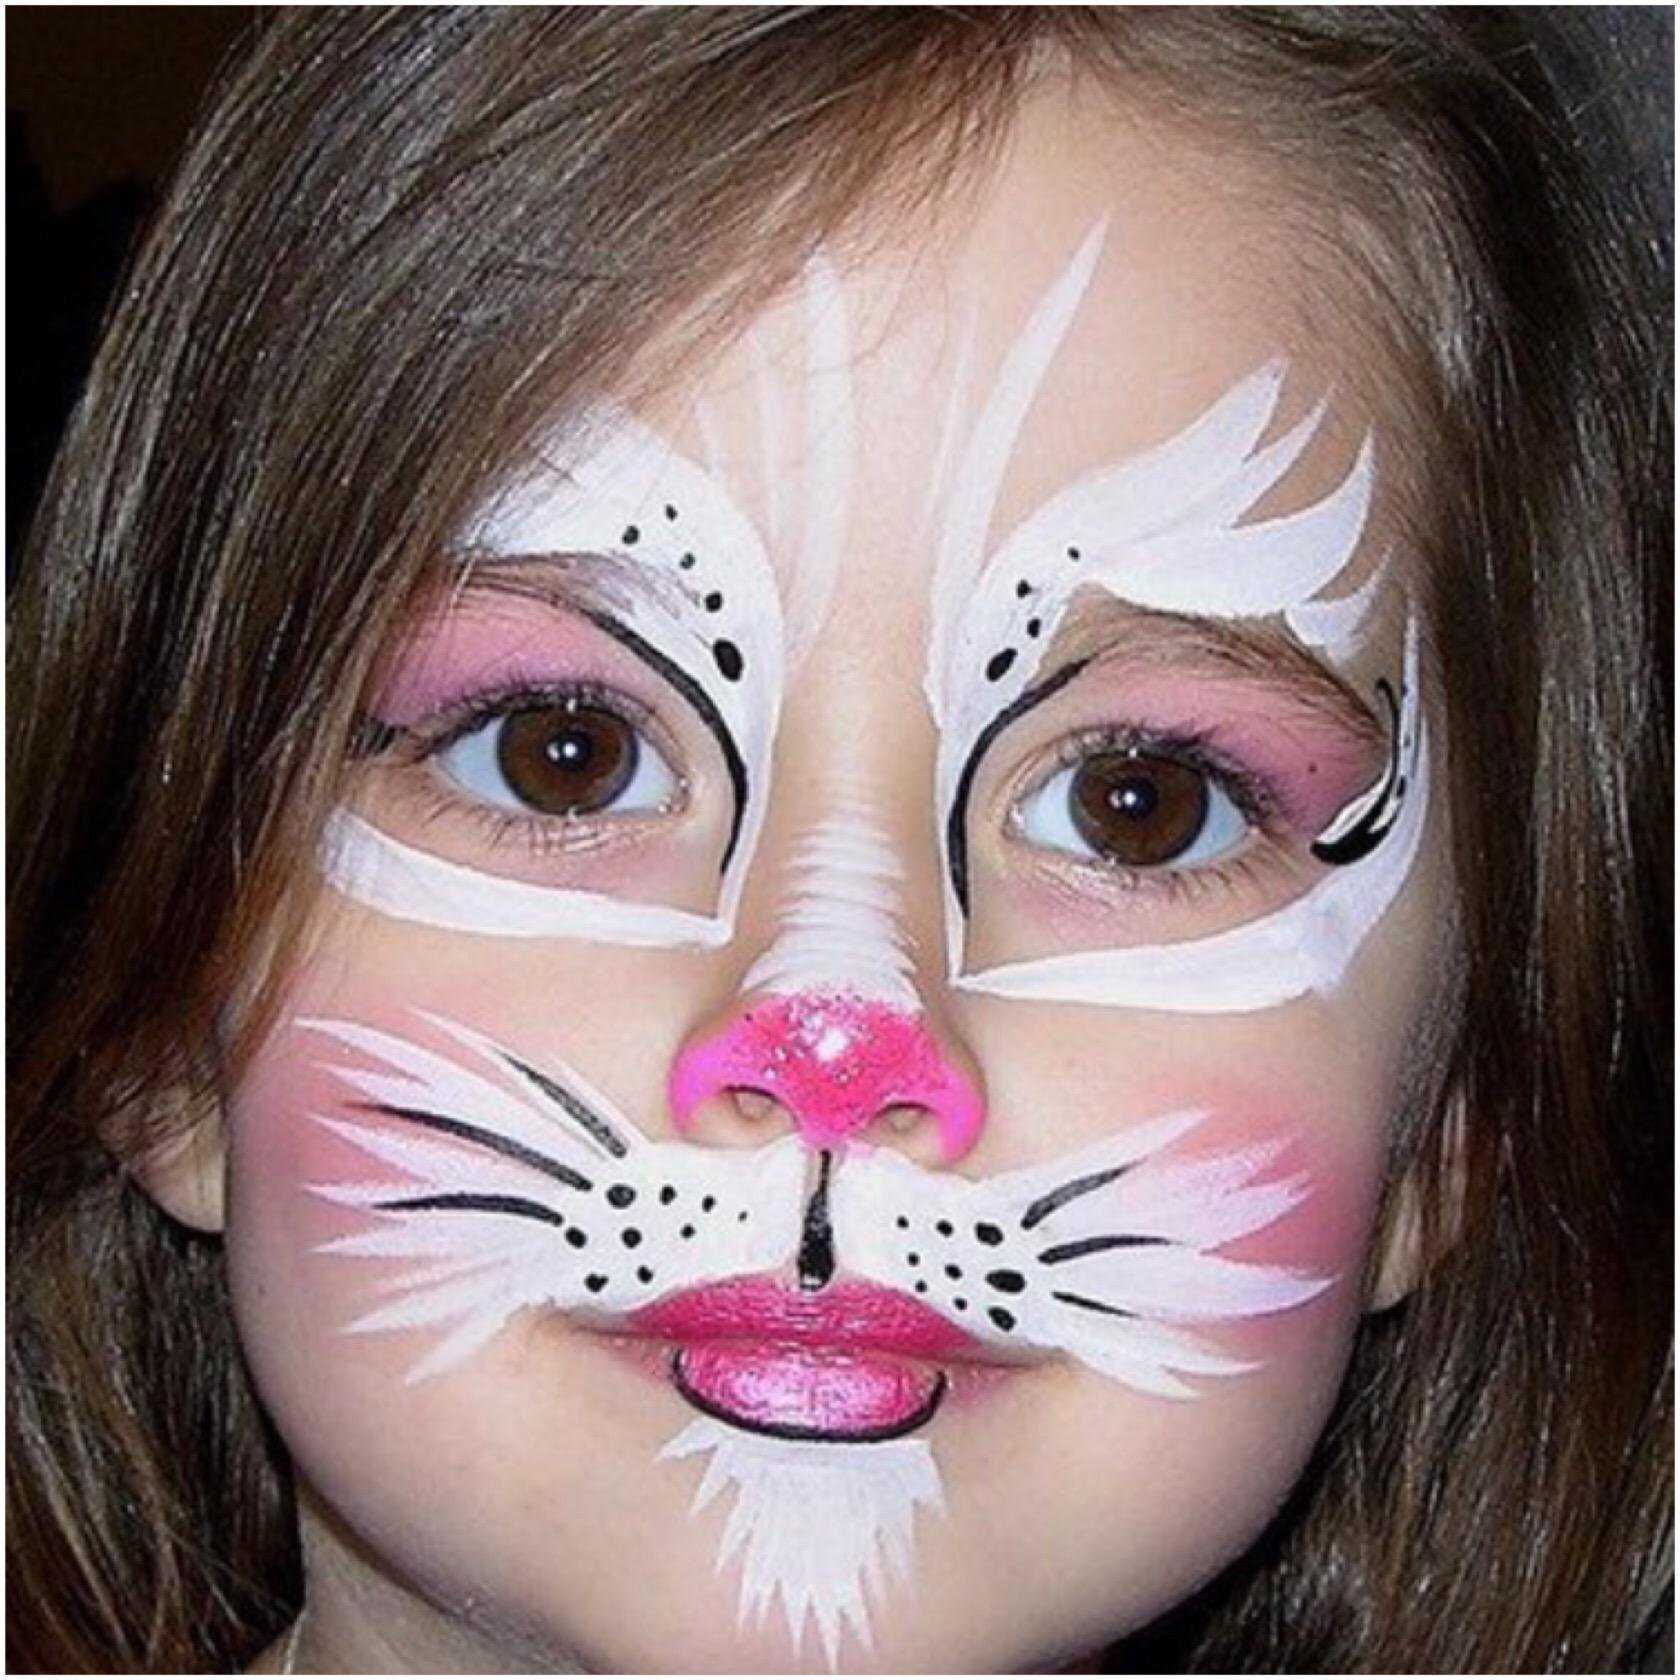 Аквагрим зайчик на лице – как нарисовать зайчика, мордочку зайца на лице ребенка? сделать аквагрим?